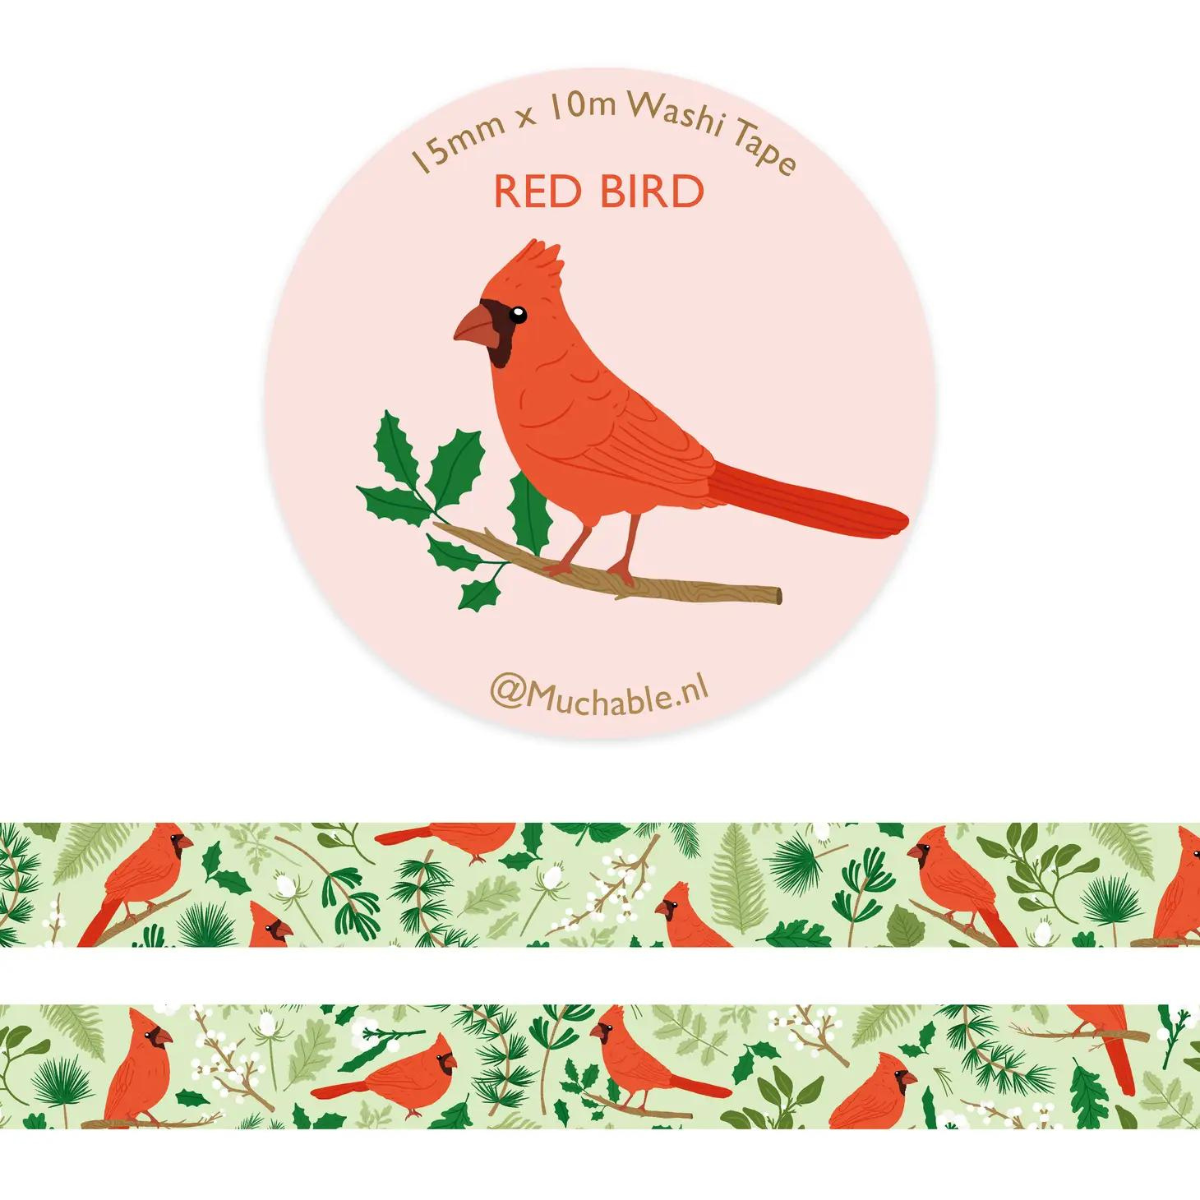 Pour ajouter une touche de féérie à vos projets créatifs, ce rouleau de masking tape décoré d'un cardinal rouge est parfait pour embellir vos cartes de vœux, cadeaux et décorations de Noël.